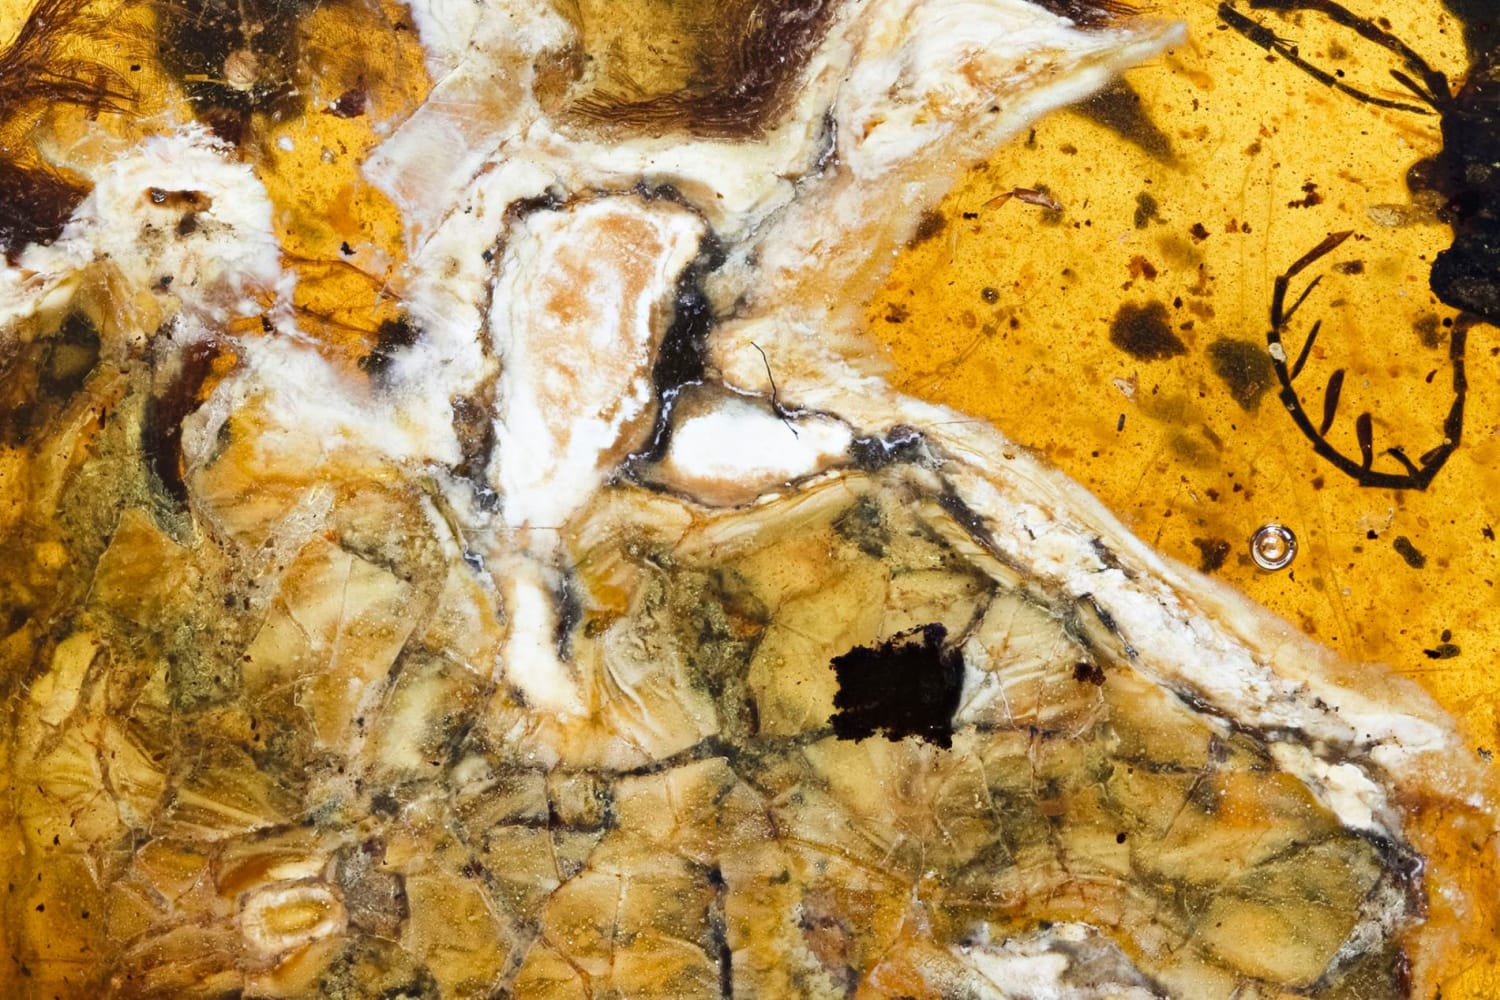 Exclusive: Dinosaur-Era Bird Found Trapped in Amber